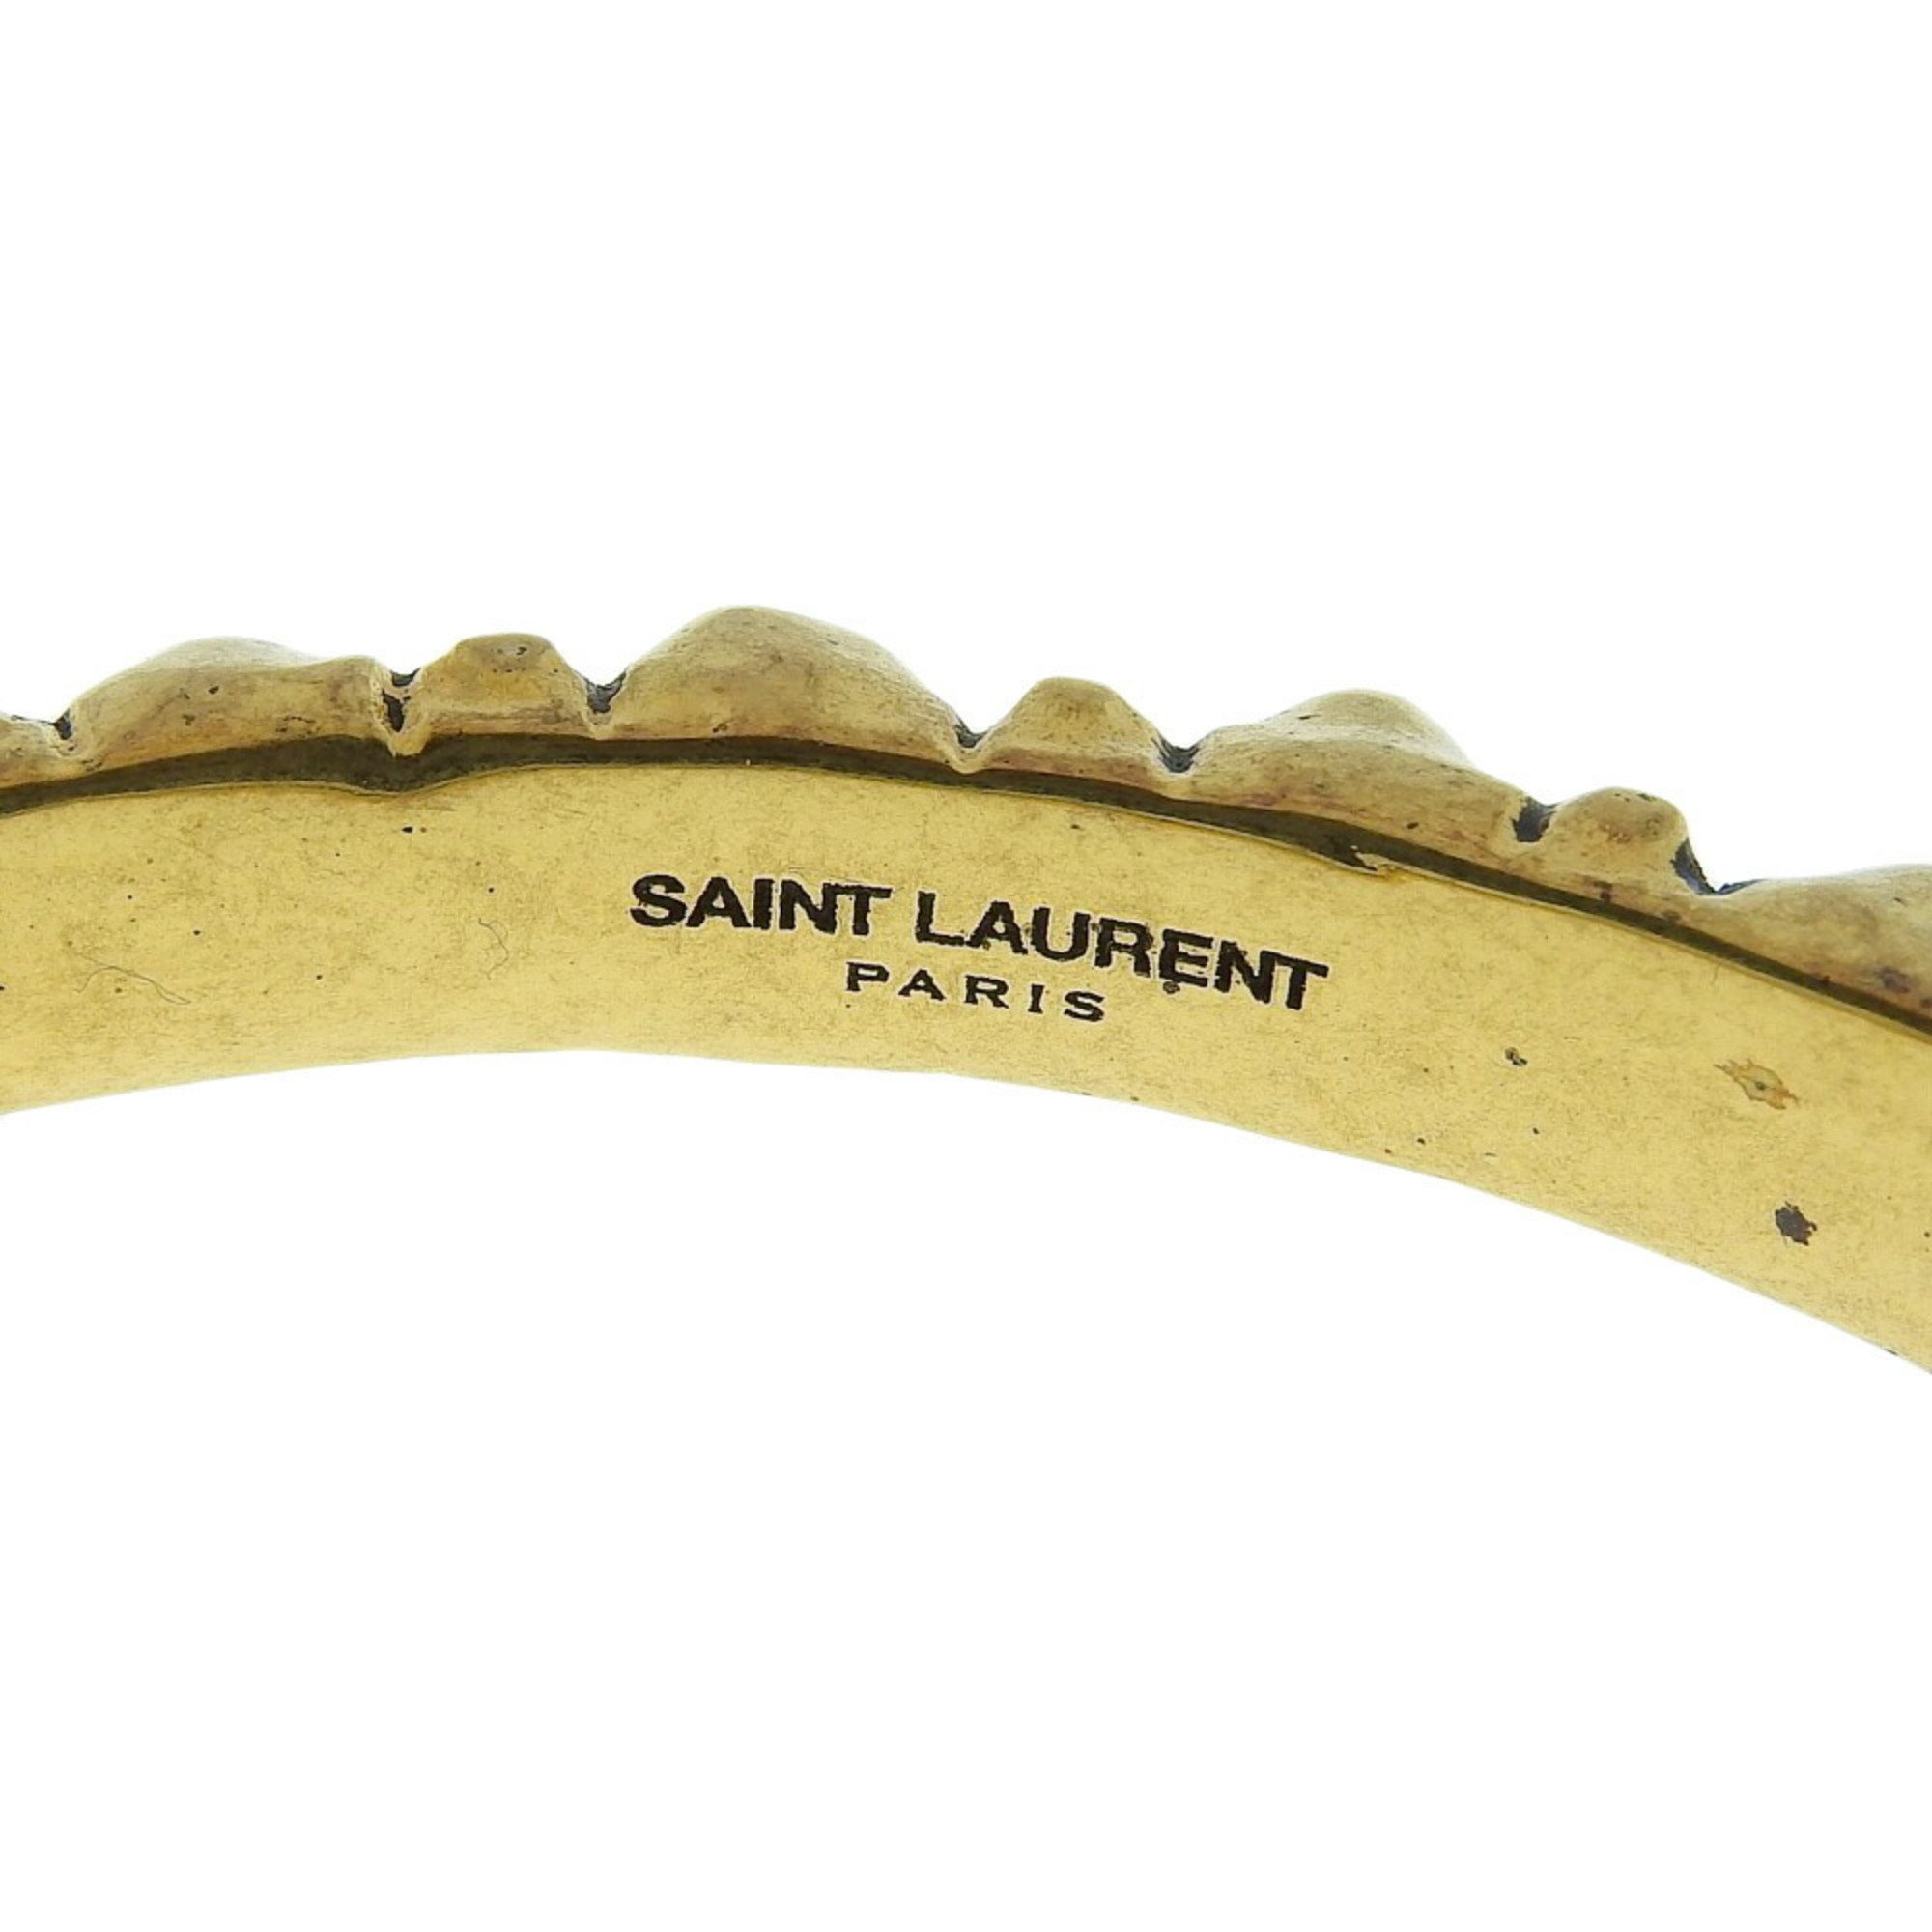 Yves Saint Laurent Saint Laurent Paris SAINT LAURENT PARIS bangle